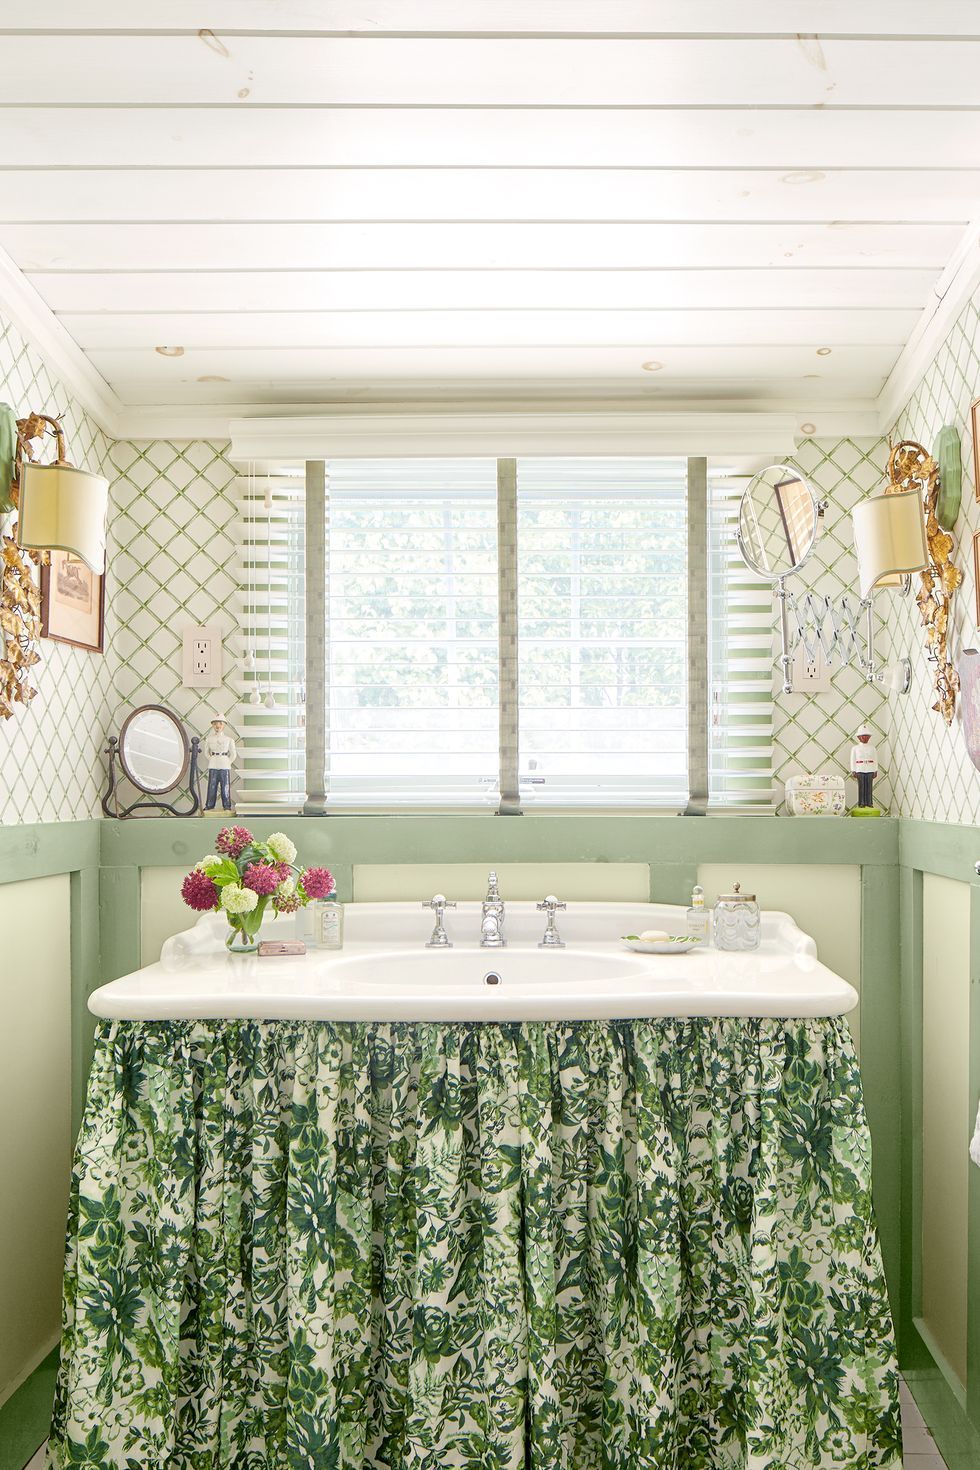 Hình ảnh phòng tắm nhỏ sinh động với rèm vải màu xanh lá nhạt dưới bồn rửa